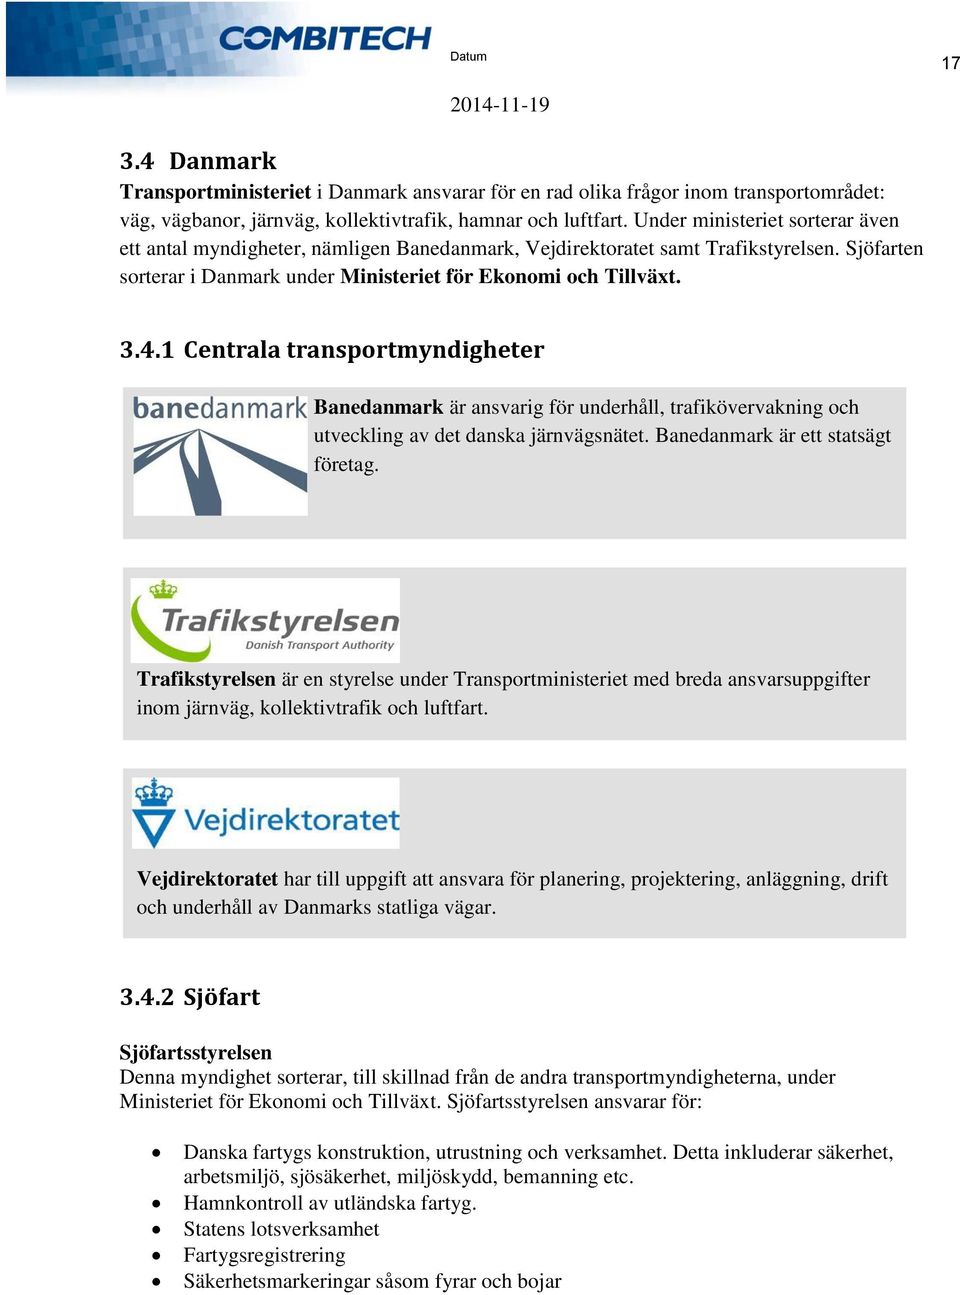 1 Centrala transportmyndigheter Banedanmark är ansvarig för underhåll, trafikövervakning och utveckling av det danska järnvägsnätet. Banedanmark är ett statsägt företag.